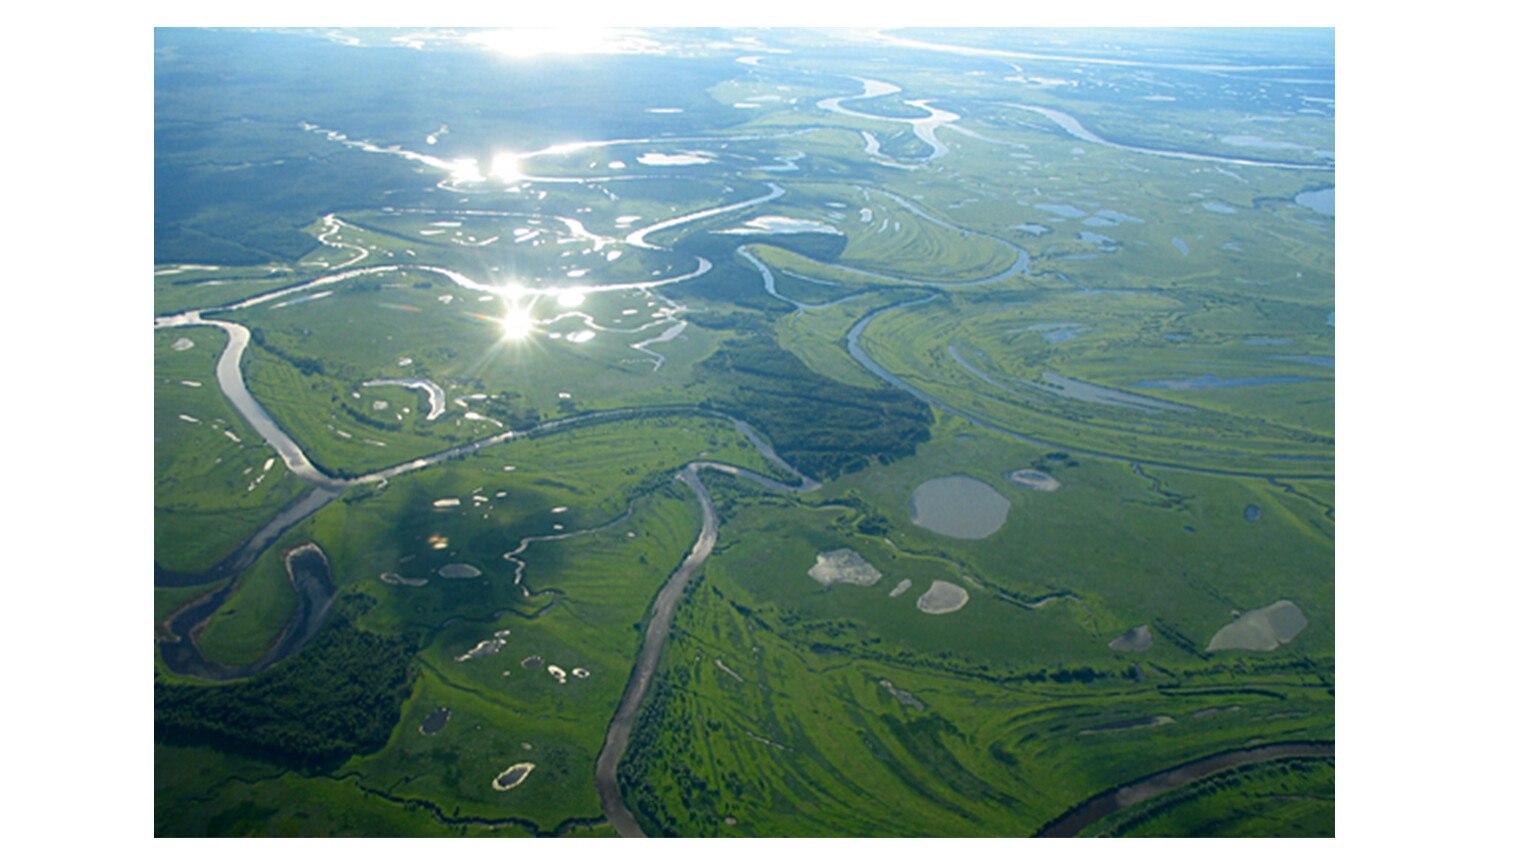 Большие реки западно сибирской равнины. Турсунтский туман озеро. Озеро Турсунтский туман ХМАО. Западно Сибирская равнина Обь. Реки Западно сибирской равнины.